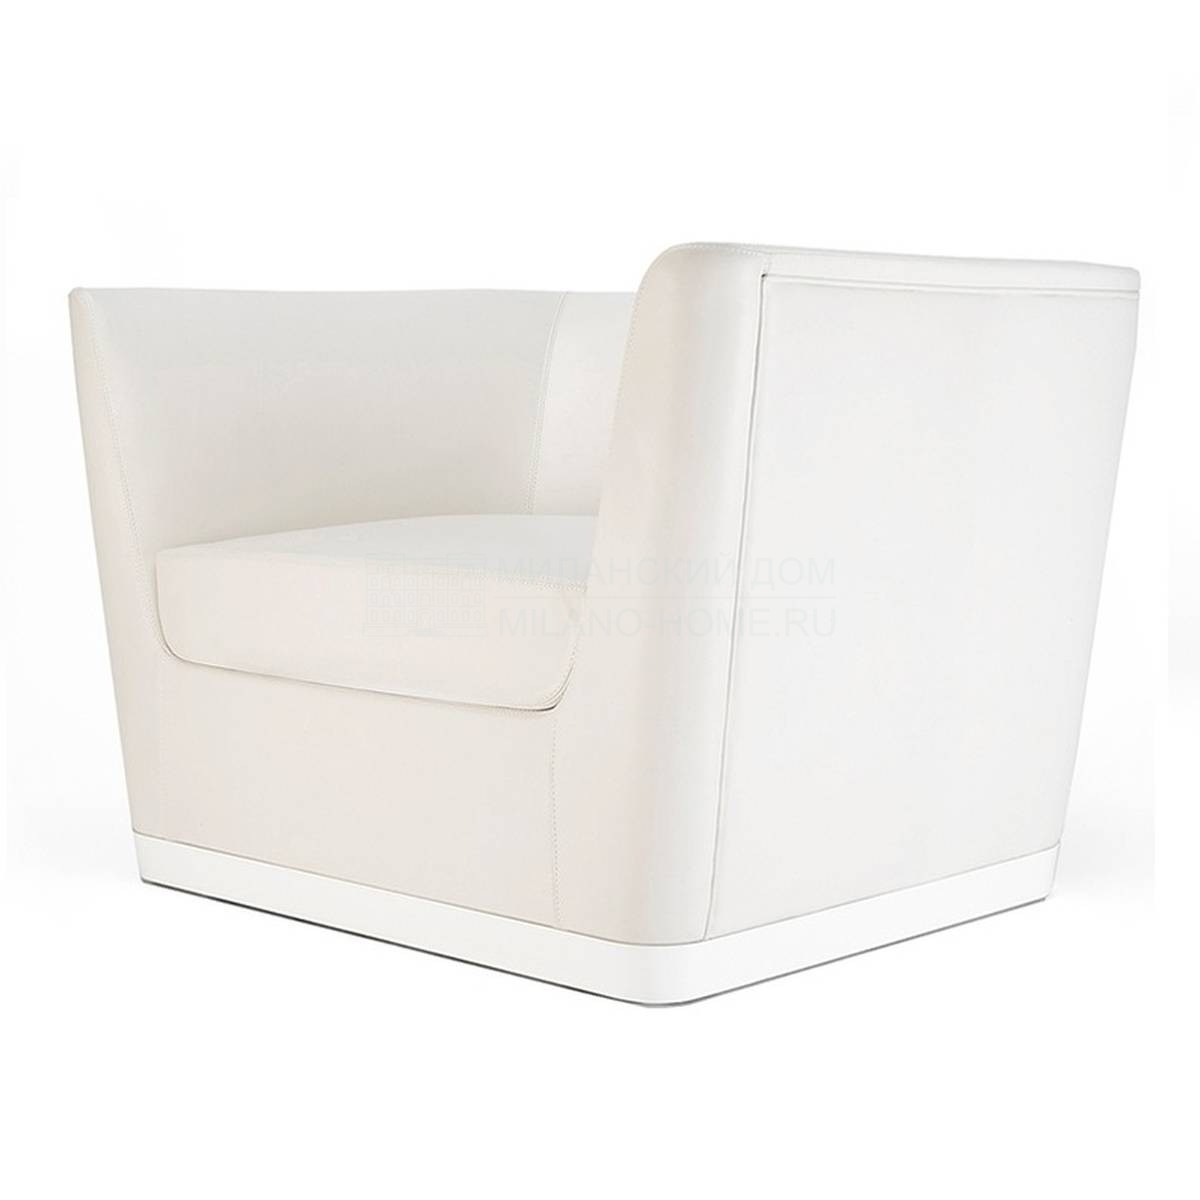 Кресло Forever leather armchair из Великобритании фабрики Sé COLLECTIONS